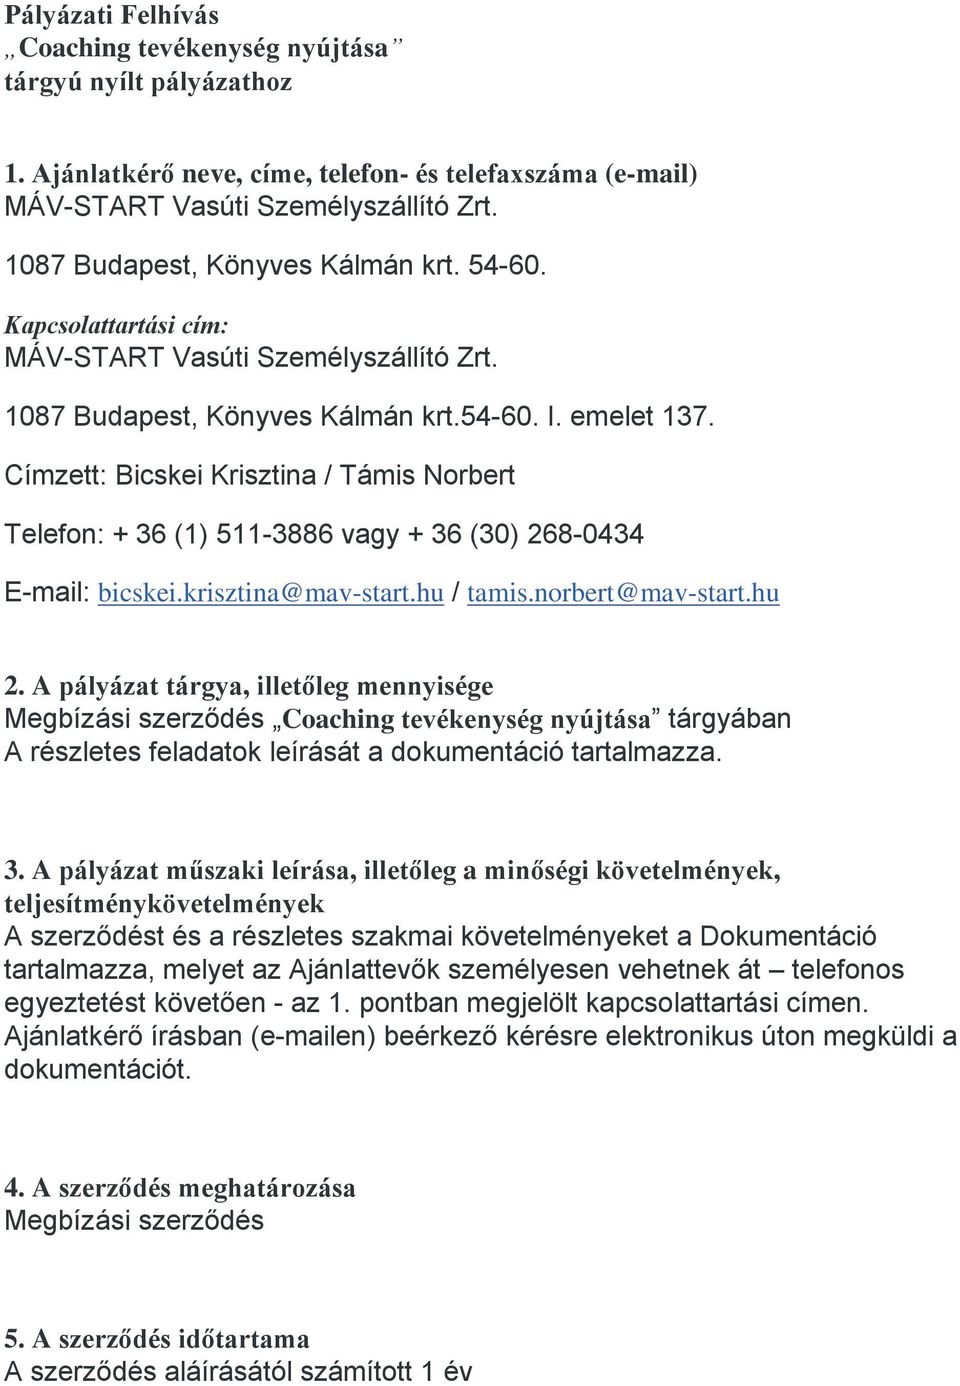 Címzett: Bicskei Krisztina / Támis Norbert Telefon: + 36 (1) 511-3886 vagy + 36 (30) 268-0434 E-mail: bicskei.krisztina@mav-start.hu / tamis.norbert@mav-start.hu 2.